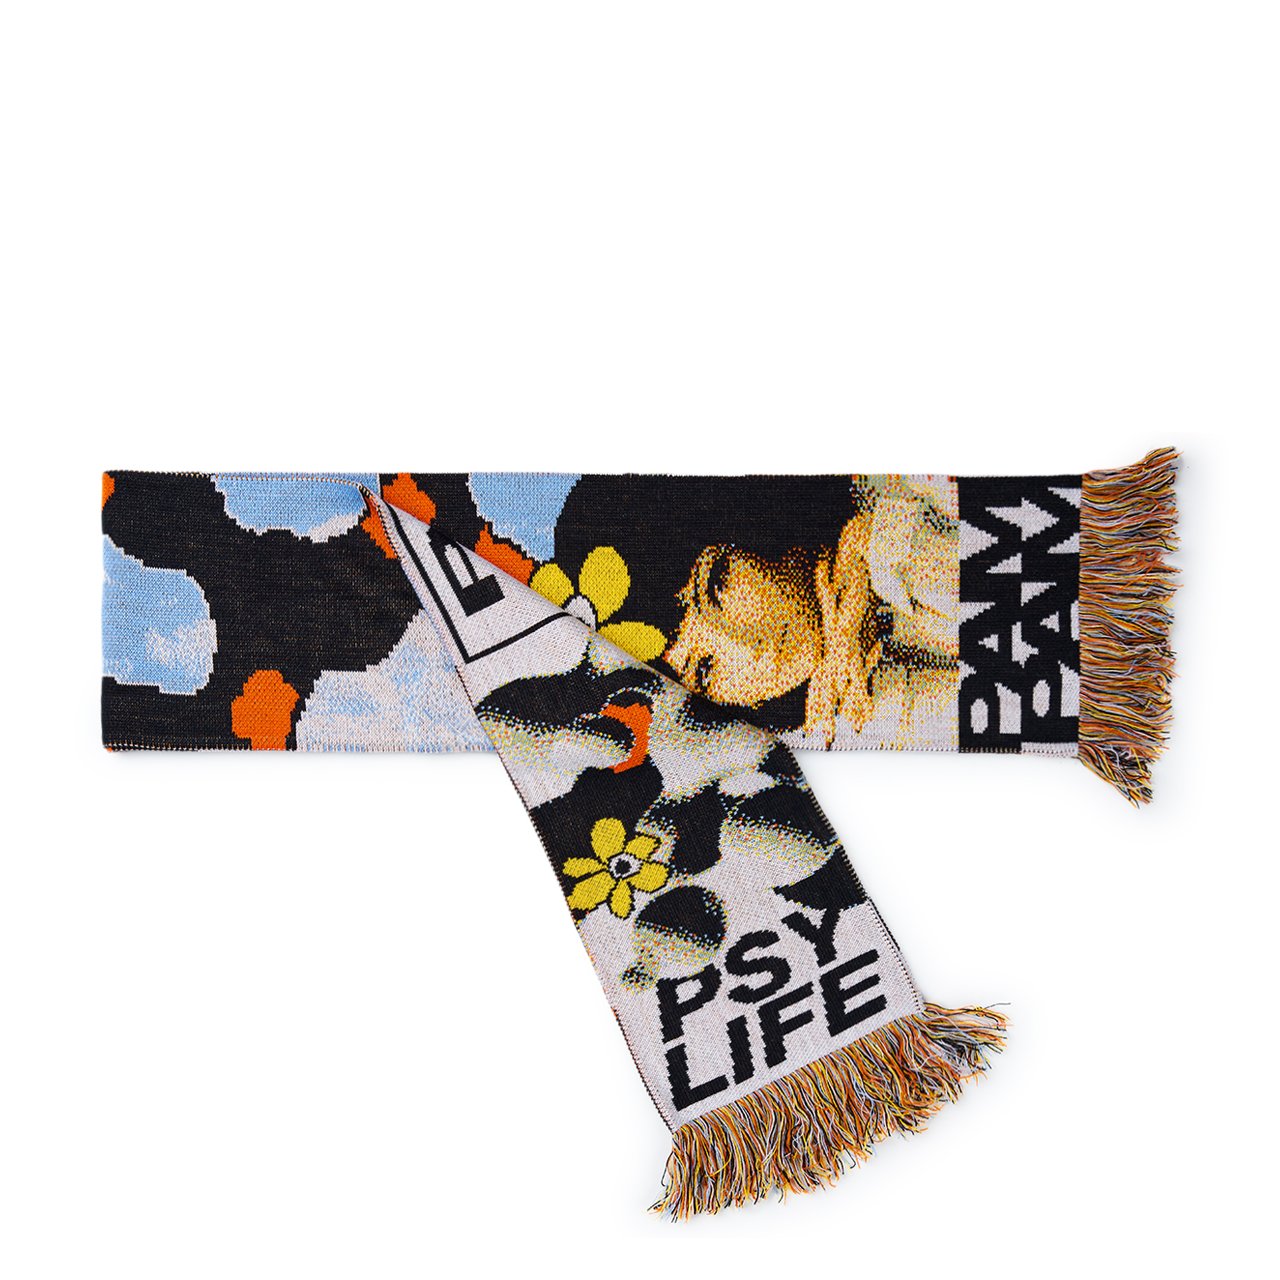 perks and mini manifest scarf (multi) - 8576-mlt - a.plus - Image - 4